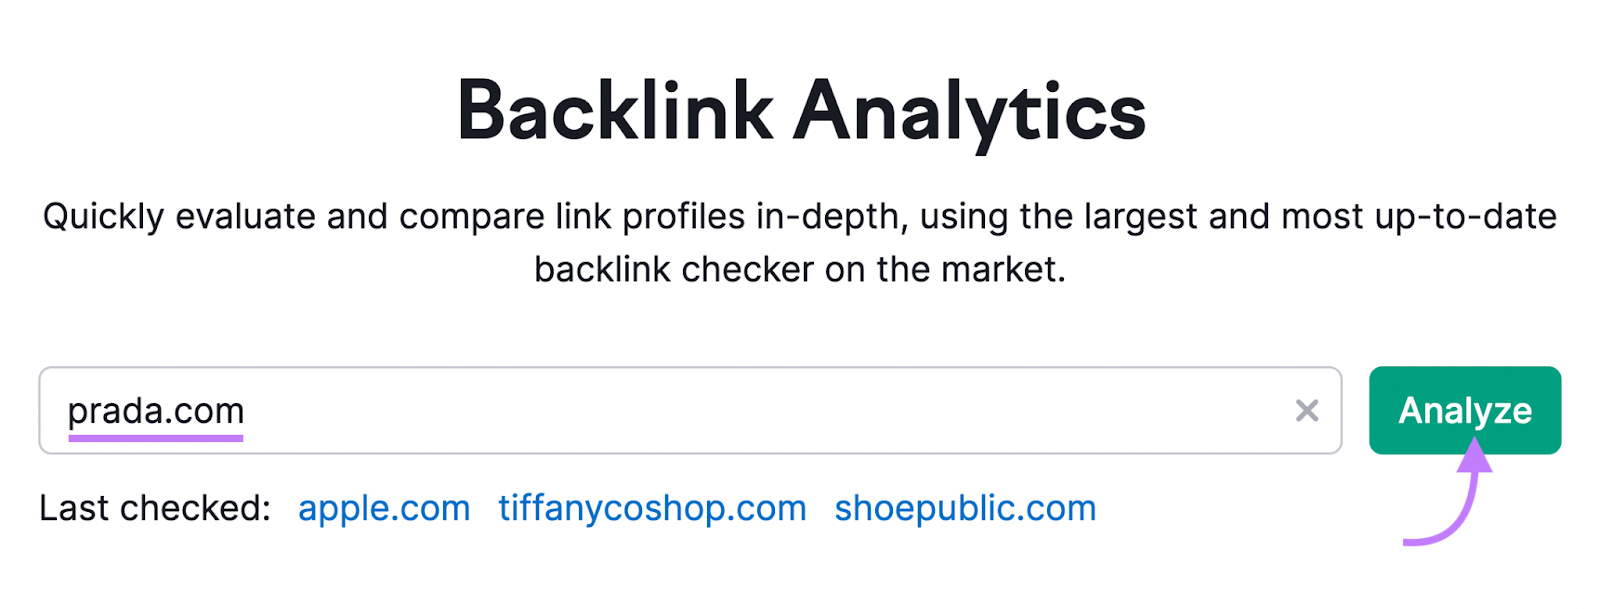 "prada.com" entered into Backlink Analytics search bar